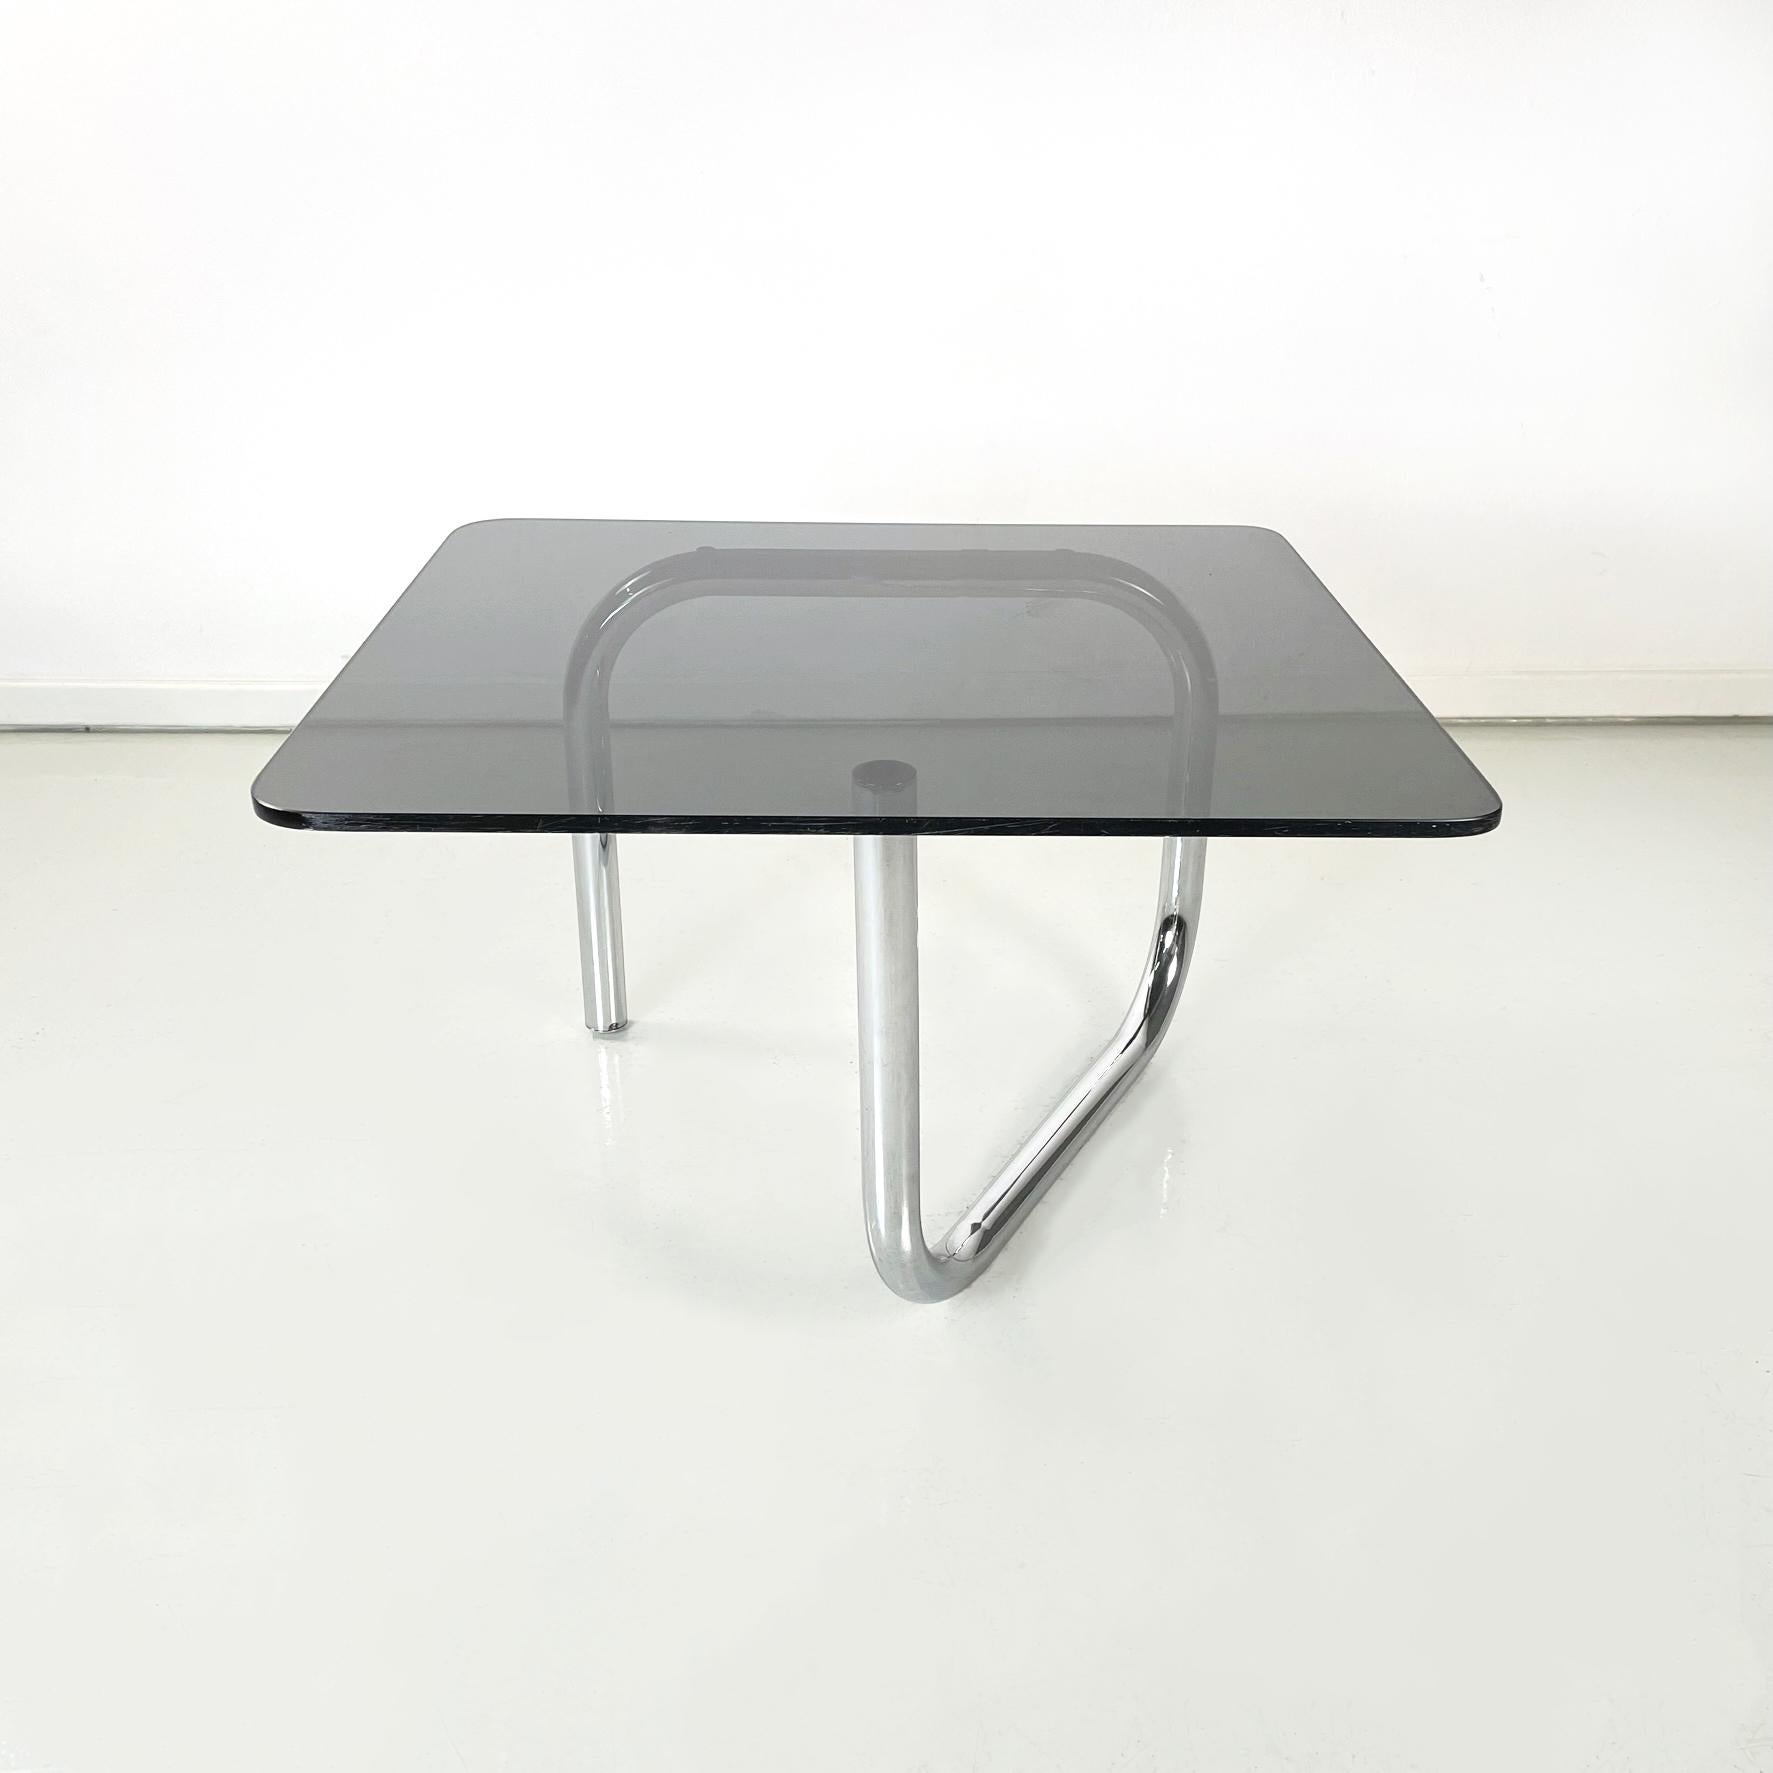 Table basse moderne italienne en verre fumé rectangulaire et acier chromé, années 1970.
Table basse avec plateau rectangulaire et coins arrondis en verre fumé. La structure est constituée d'un seul tube d'acier chromé à la forme sinueuse.
Cette